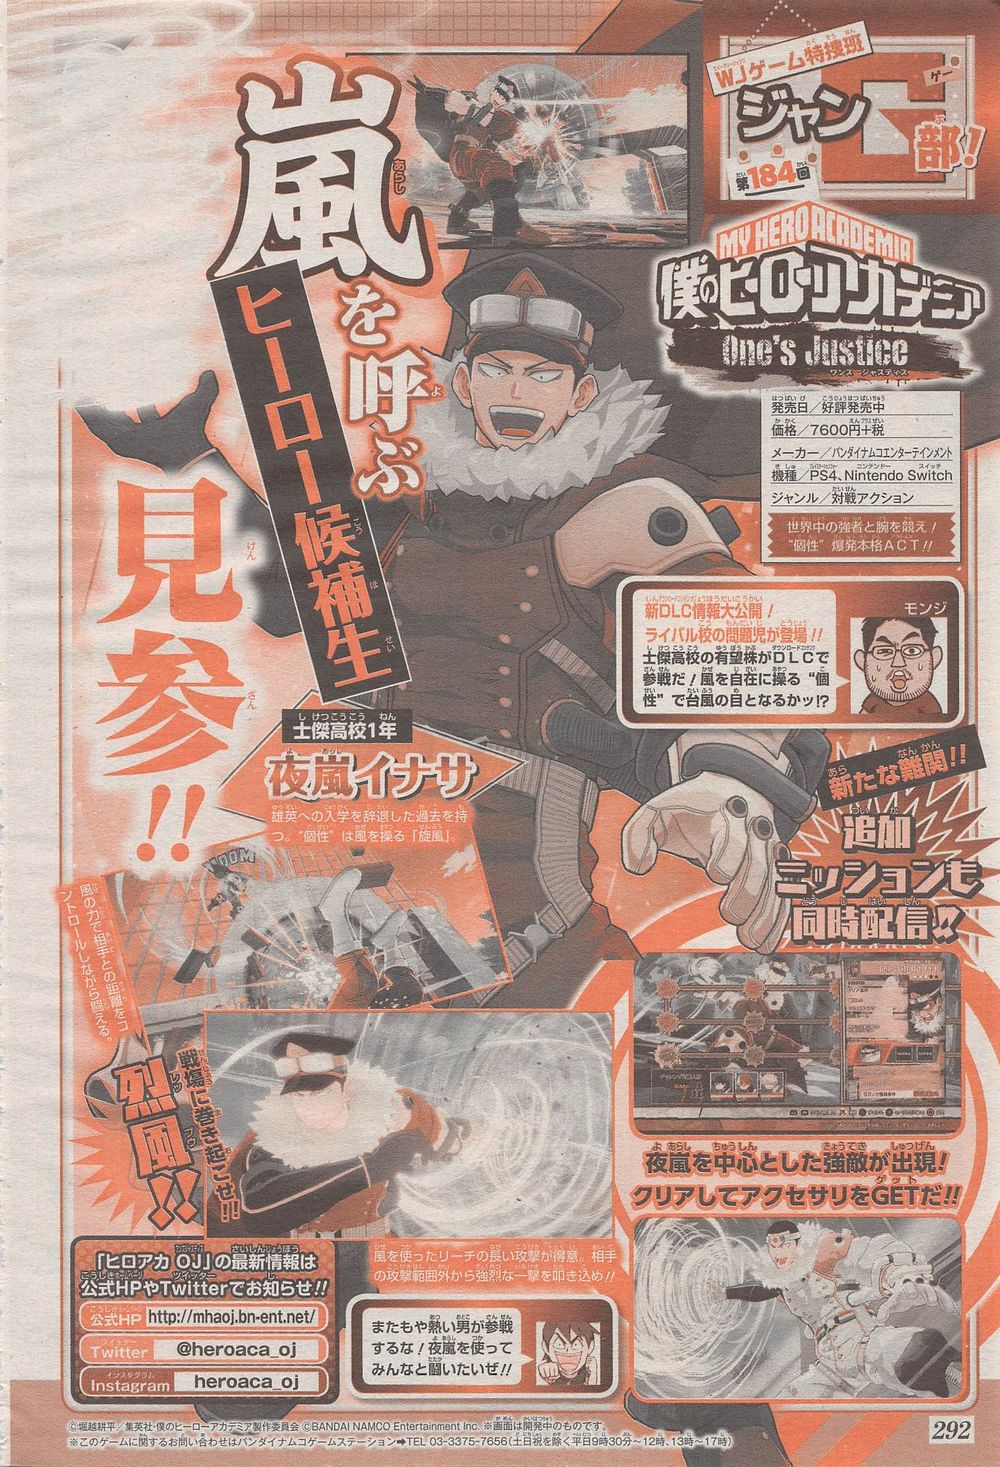 My Hero One's Justice, annunciato Inasa Yoarashi come personaggio DLC.jpg